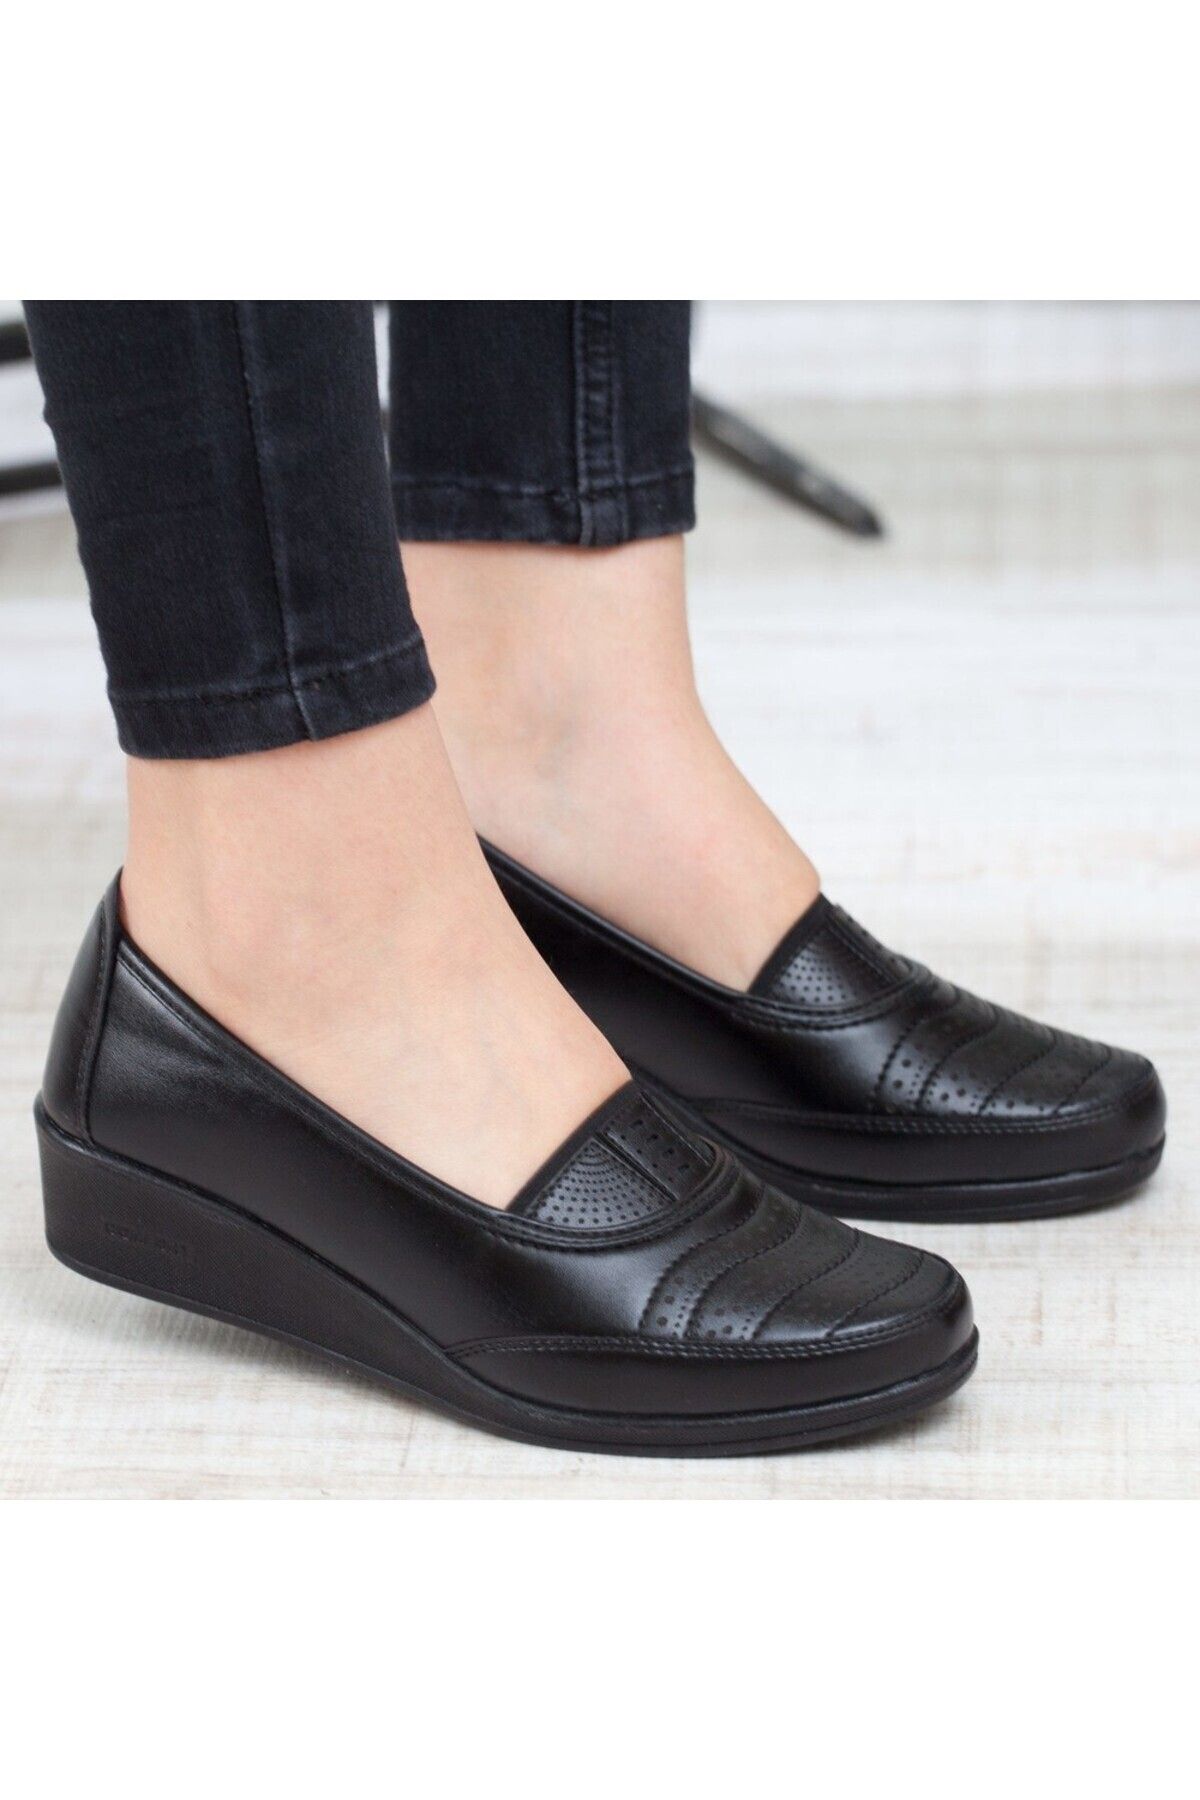 KAOF SHOES Kadın Siyah Klasik Ayakkabı Ortopedik Anne Ayakkabısı Anne Babet Ayakkabı Kadın Günlük Ayakkabı